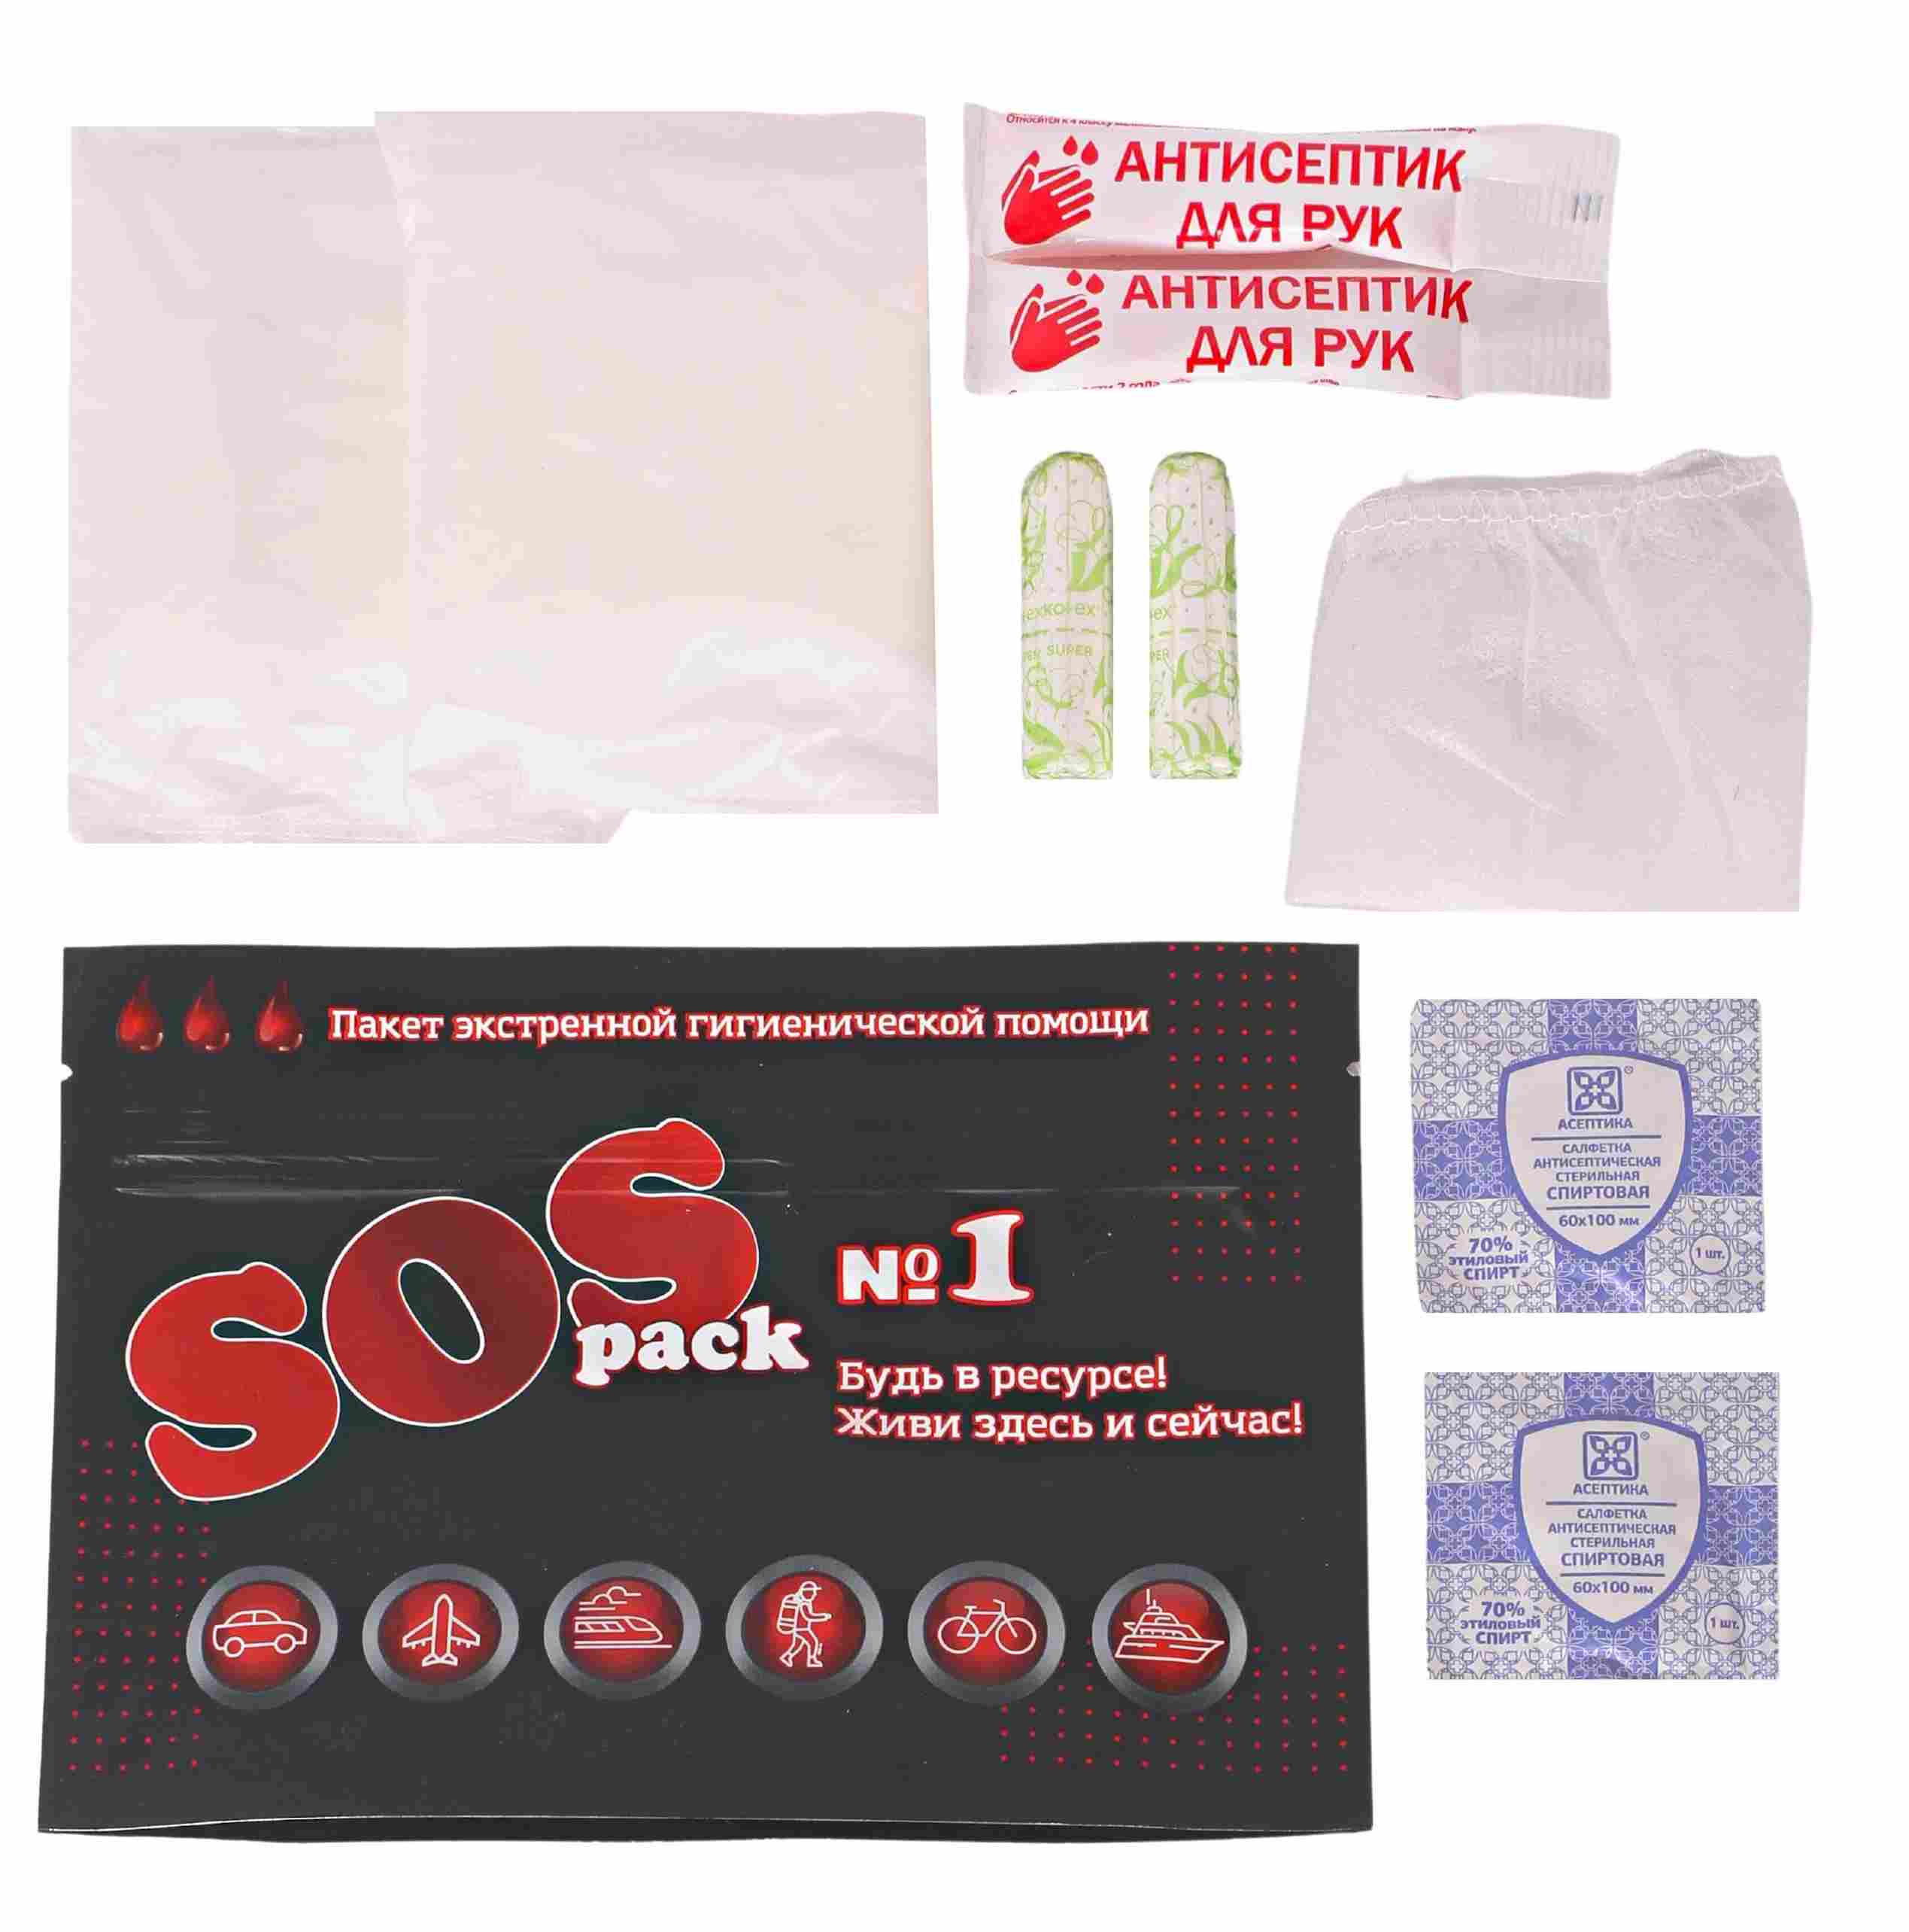 Пакет экстренной гигиенической помощи для отелей, SOS pack